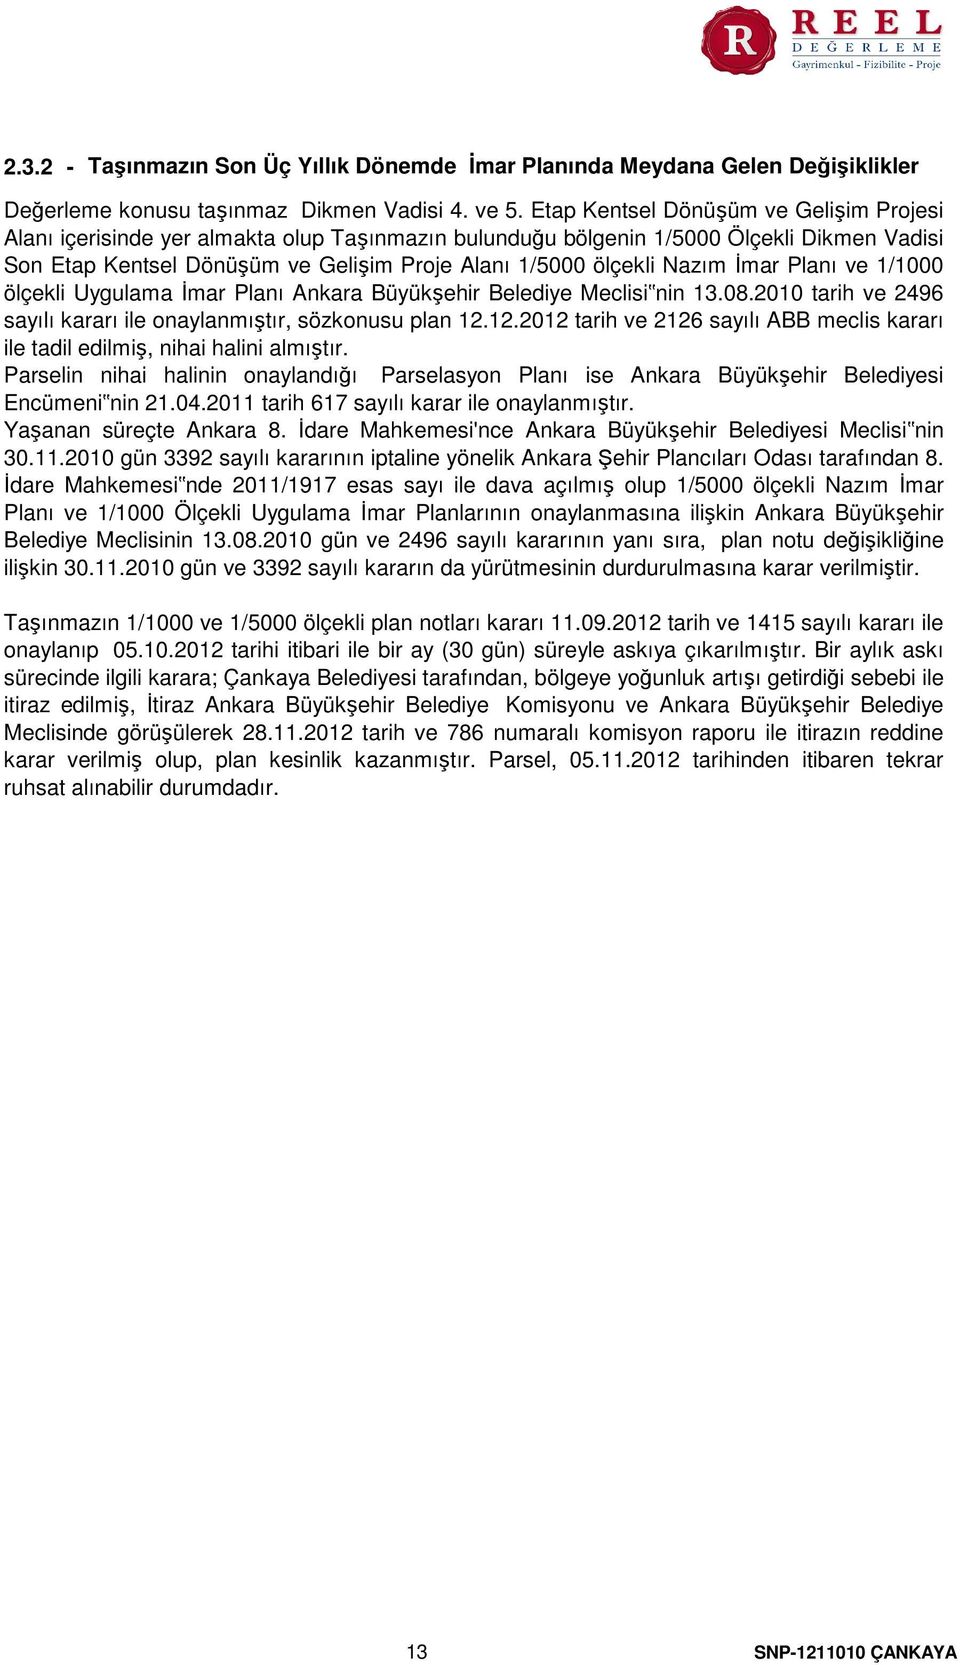 Nazım İmar Planı ve 1/1000 ölçekli Uygulama İmar Planı Ankara Büyükşehir Belediye Meclisi nin 13.08.2010 tarih ve 2496 sayılı kararı ile onaylanmıştır, sözkonusu plan 12.